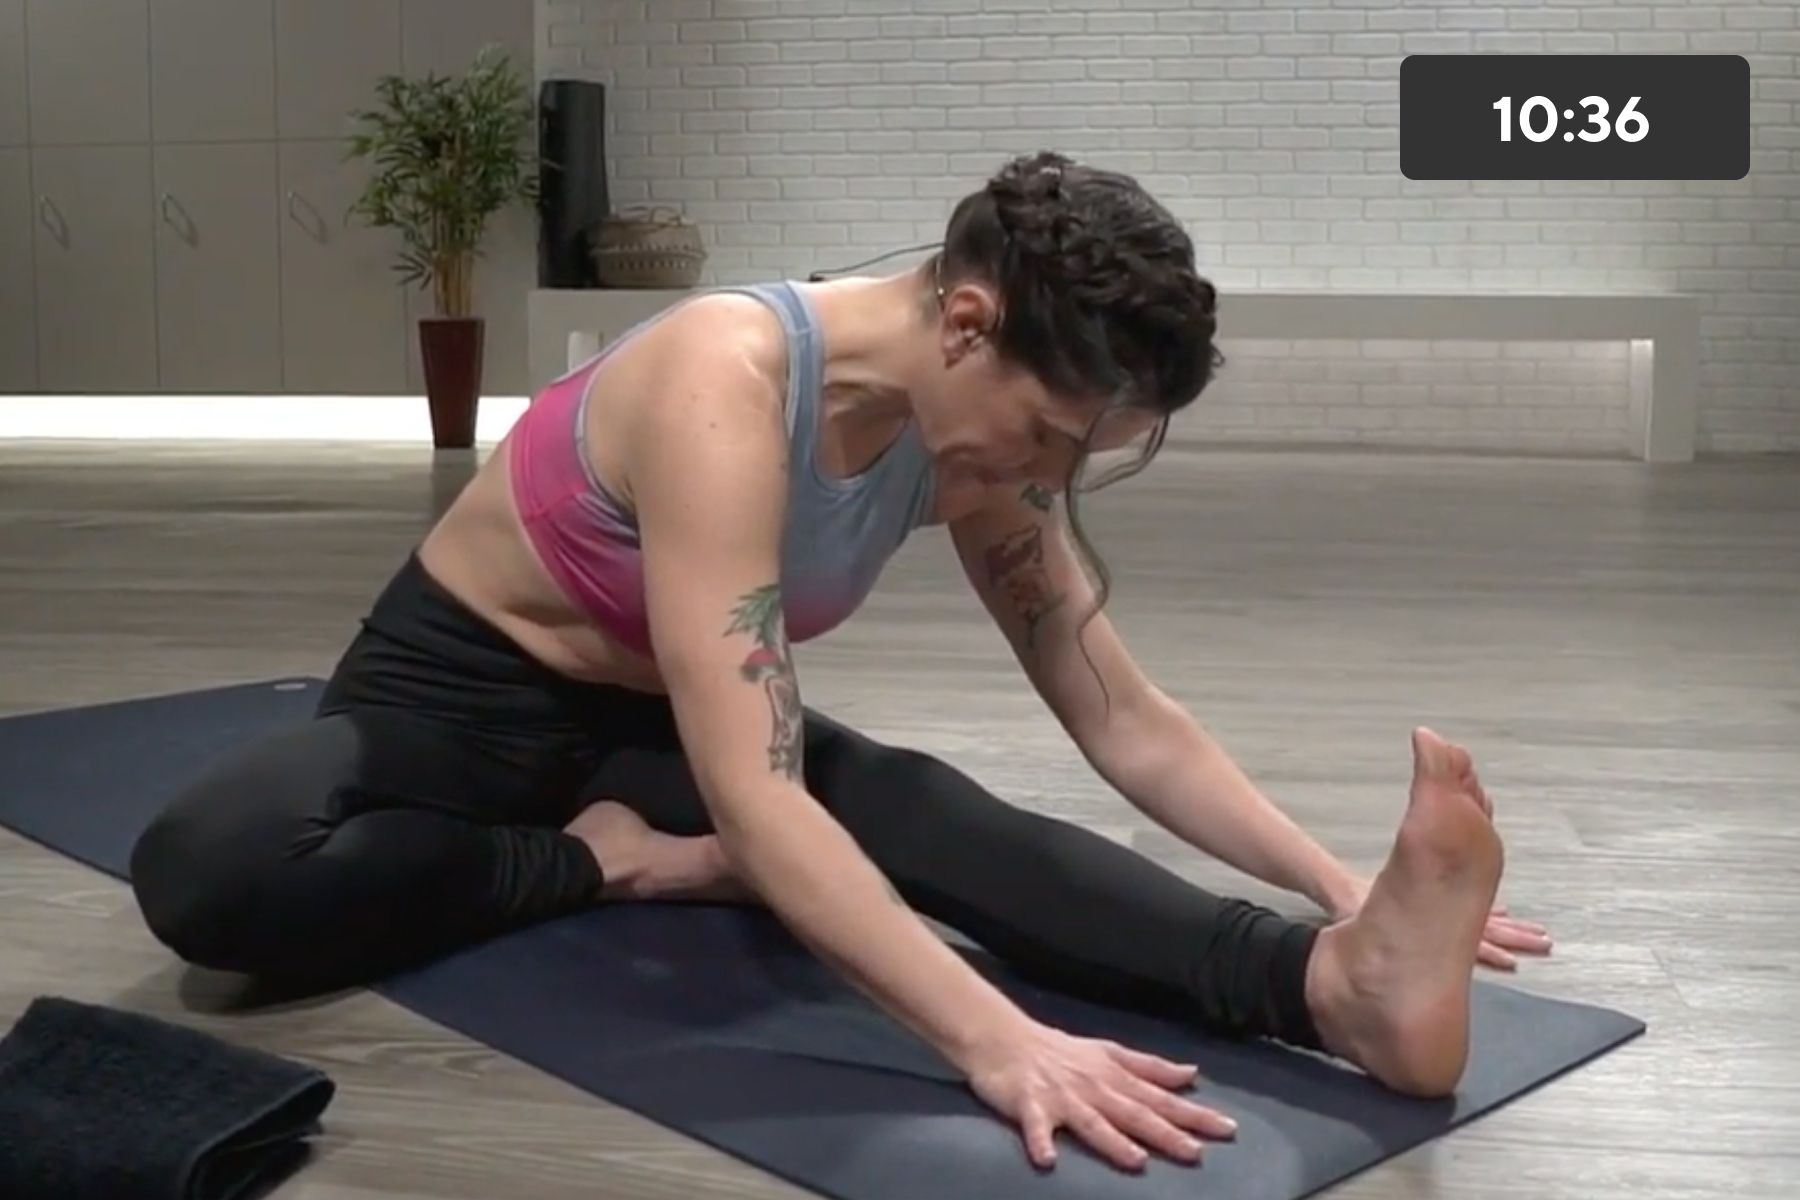 30-Min Online Yoga Sculpt Circuit Workout